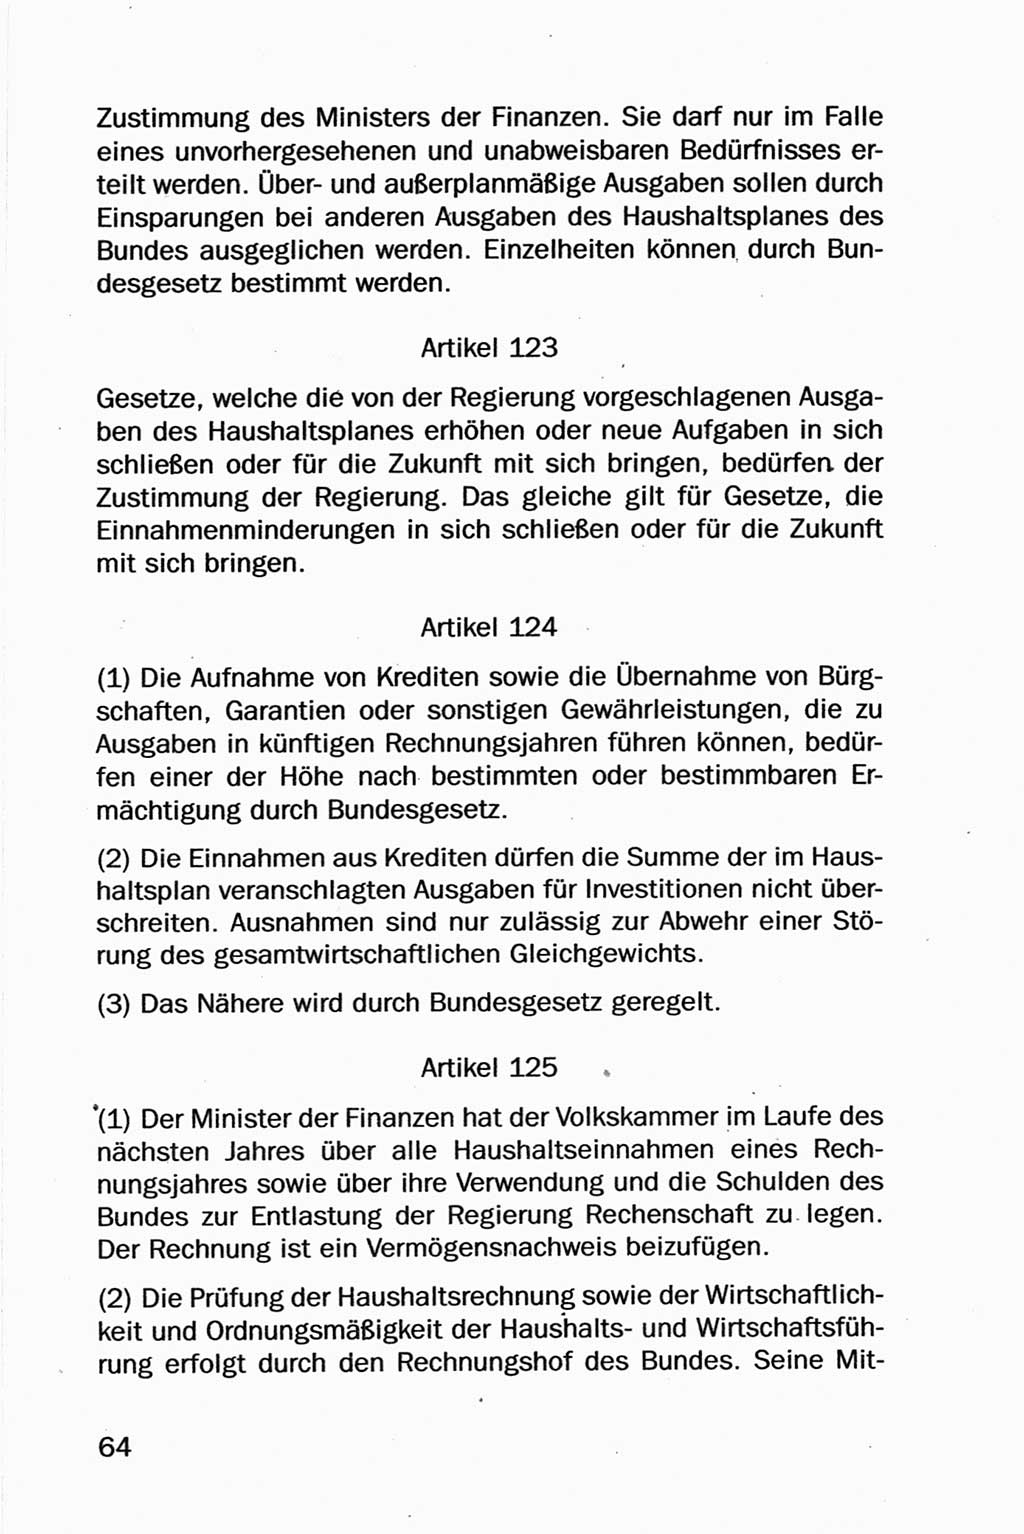 Entwurf Verfassung der Deutschen Demokratischen Republik (DDR), Arbeitsgruppe "Neue Verfassung der DDR" des Runden Tisches, Berlin 1990, Seite 64 (Entw. Verf. DDR 1990, S. 64)